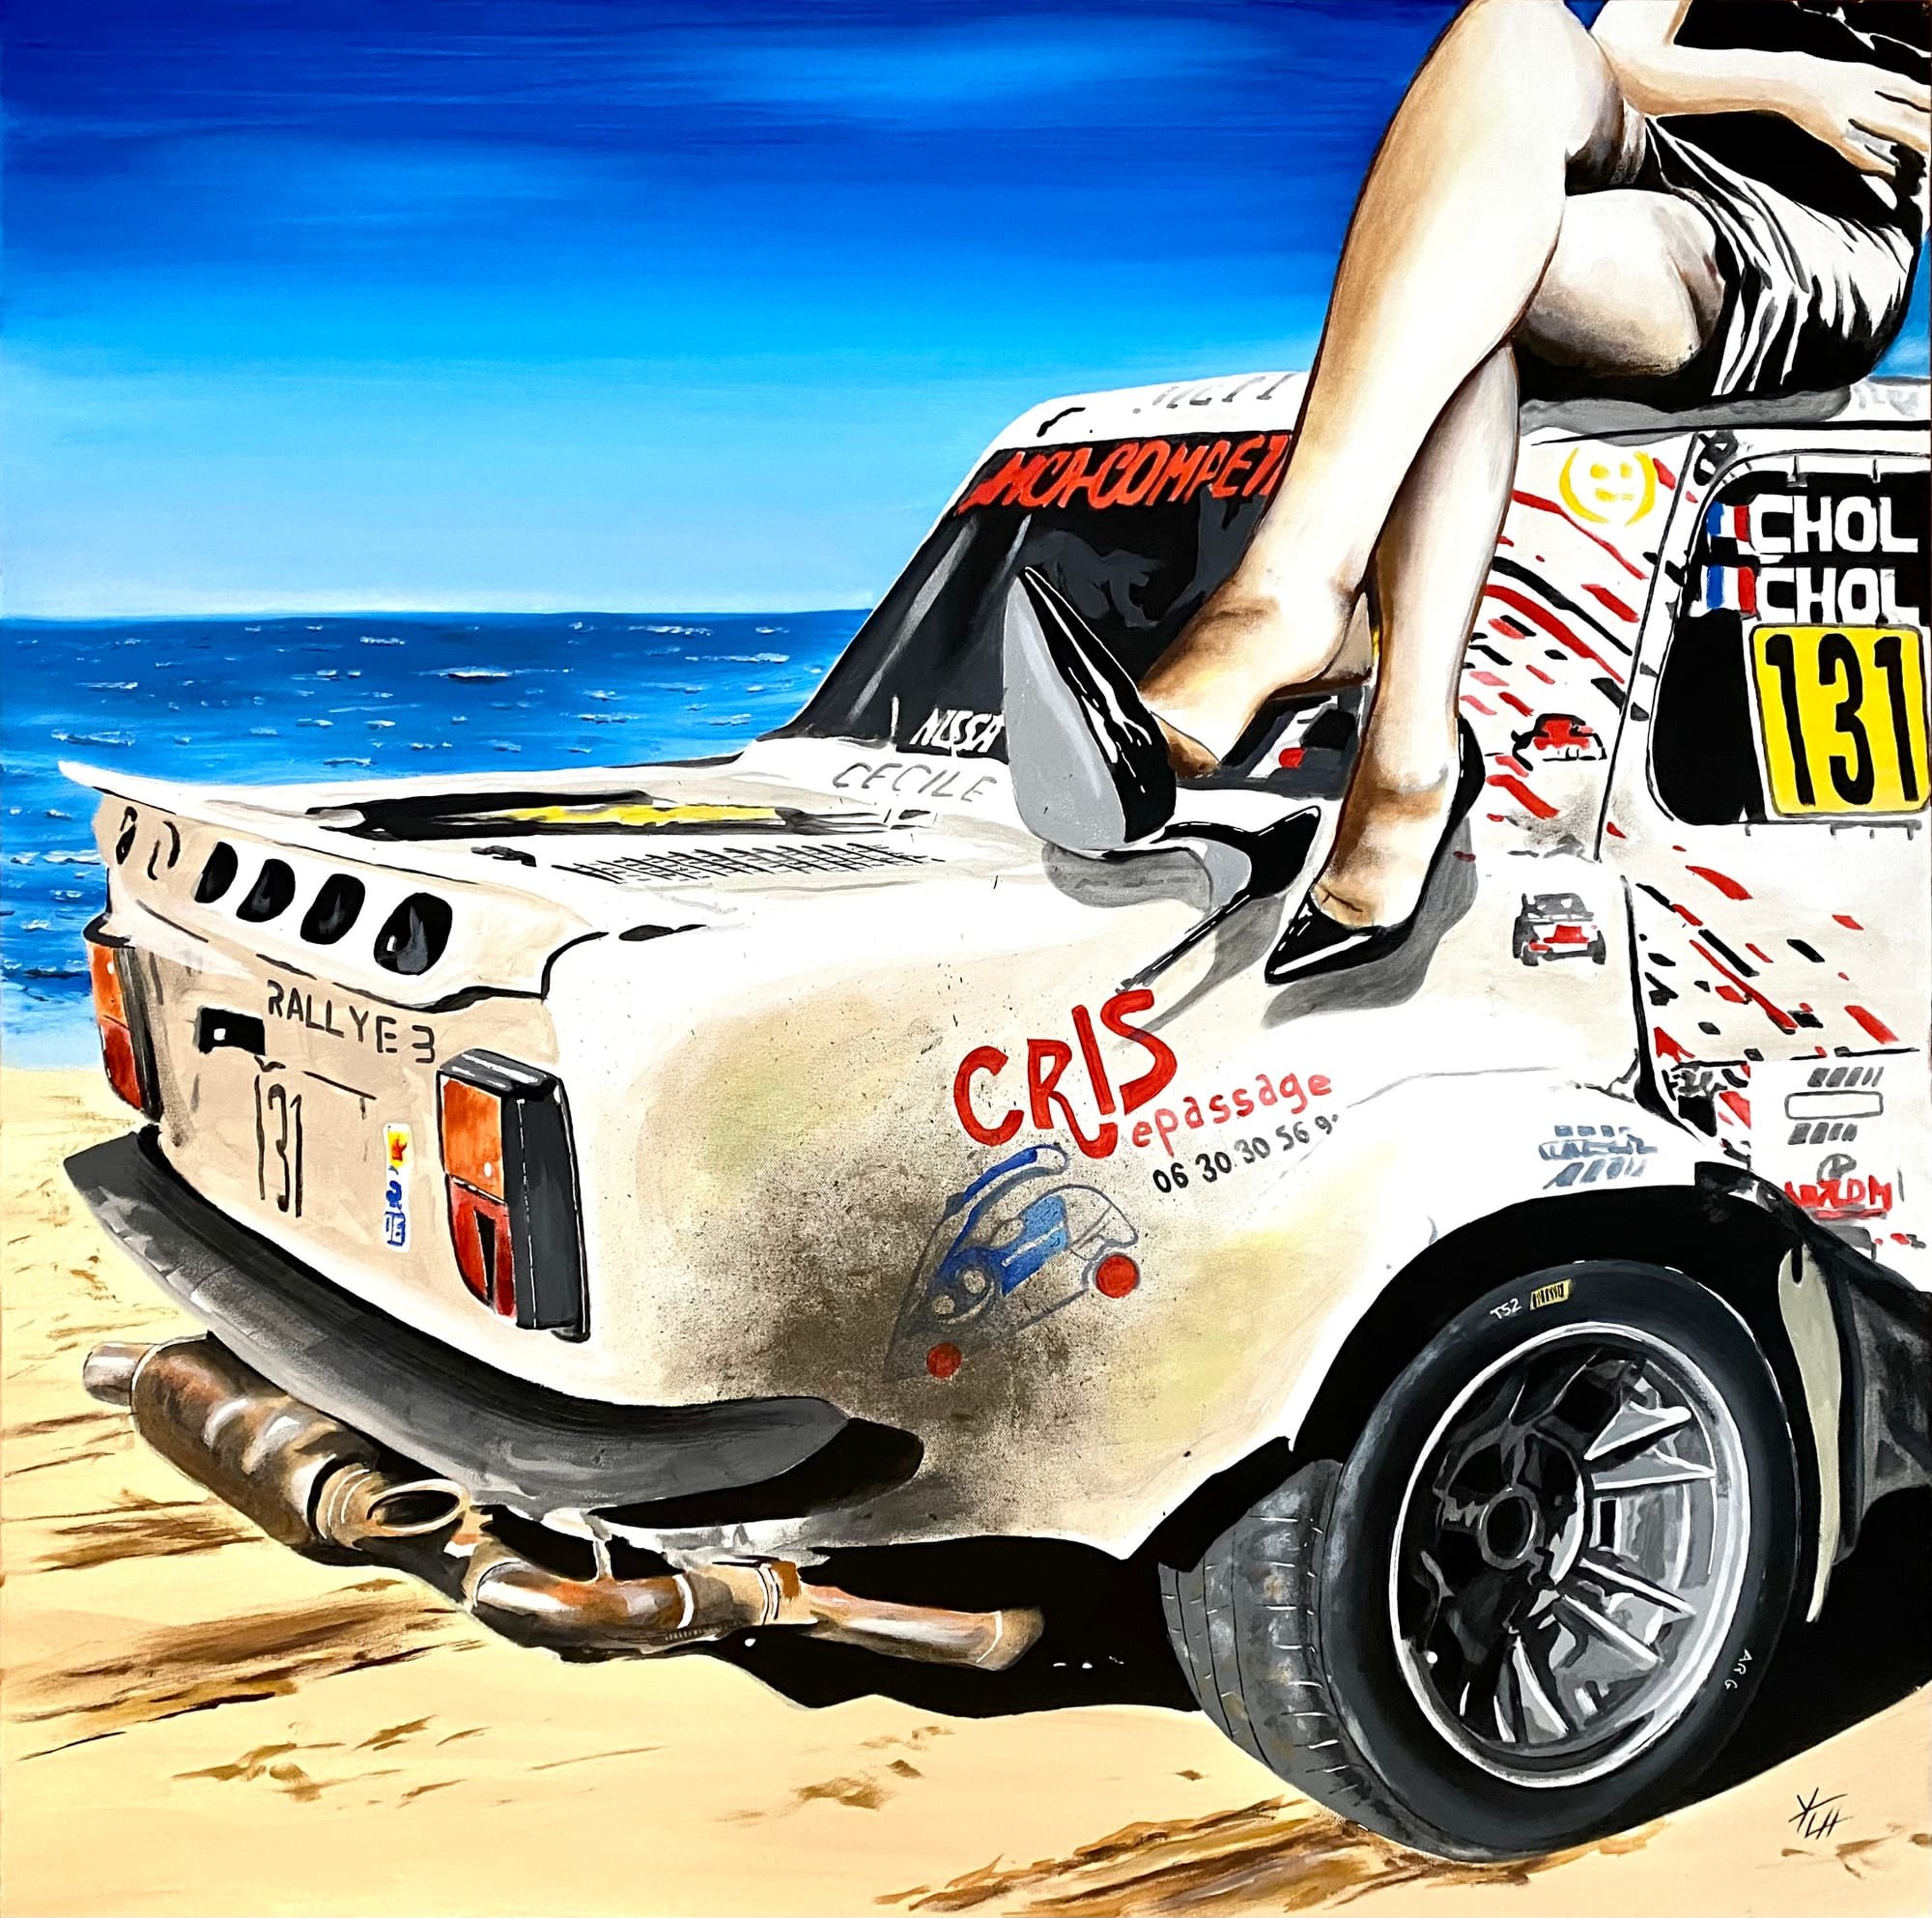 Simca Rallye 3 - Jean Michel Chol